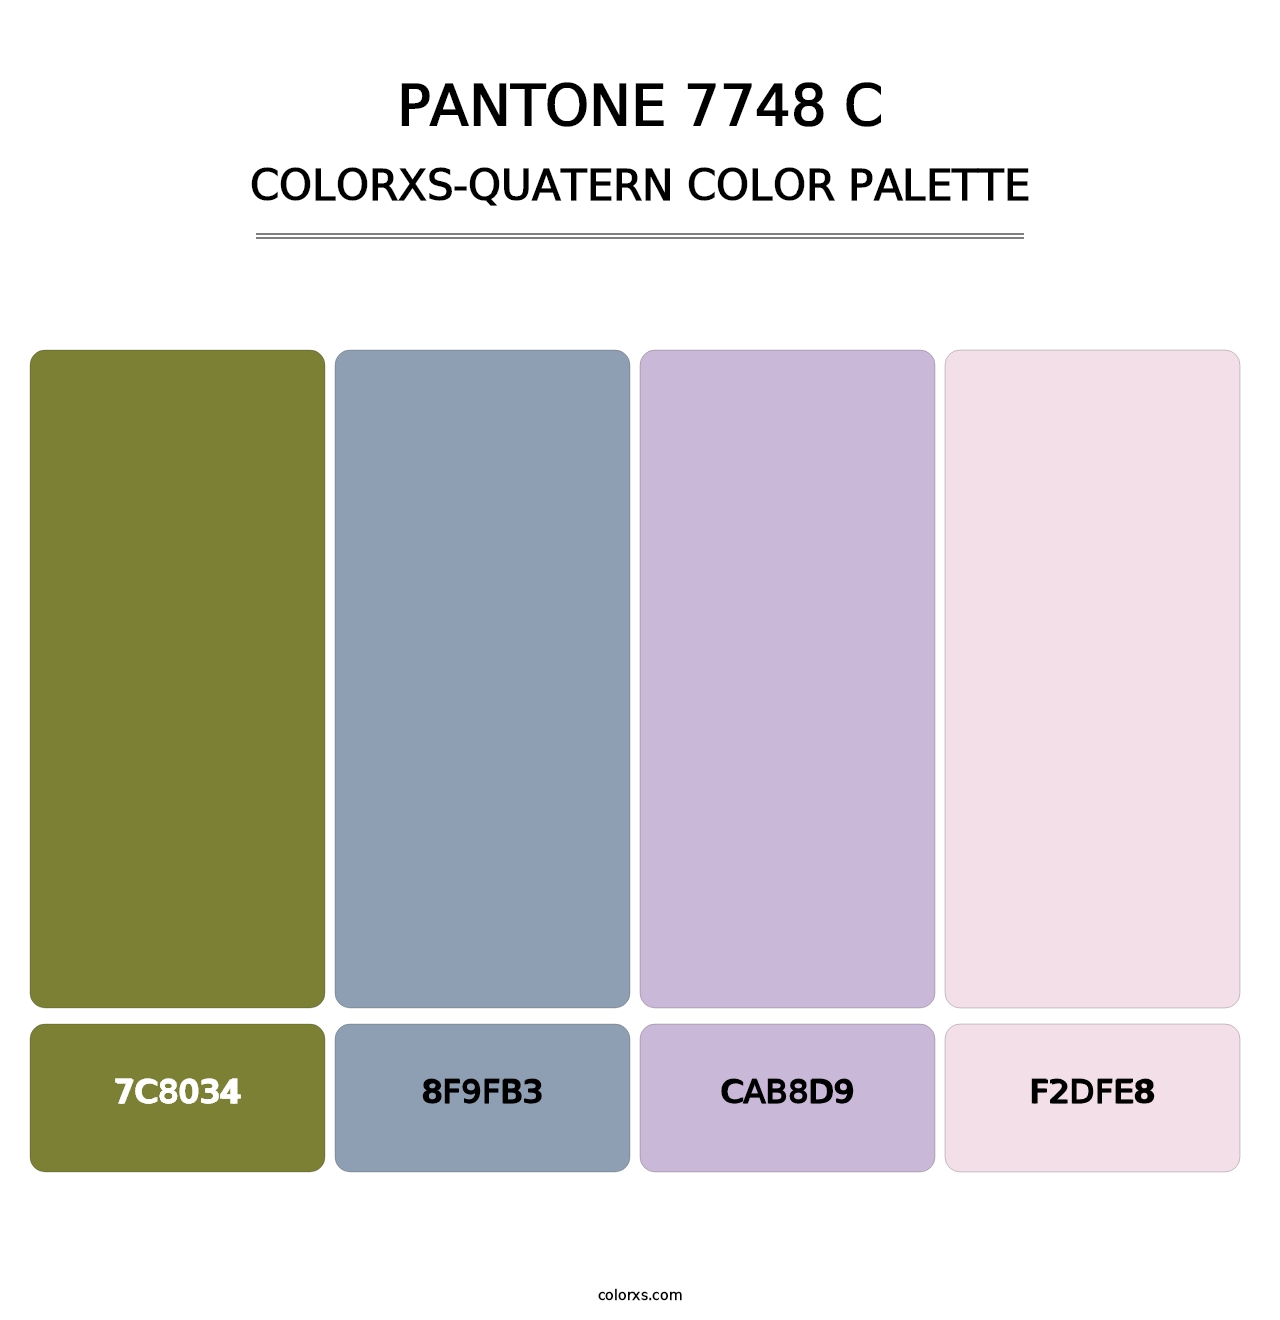 PANTONE 7748 C - Colorxs Quatern Palette